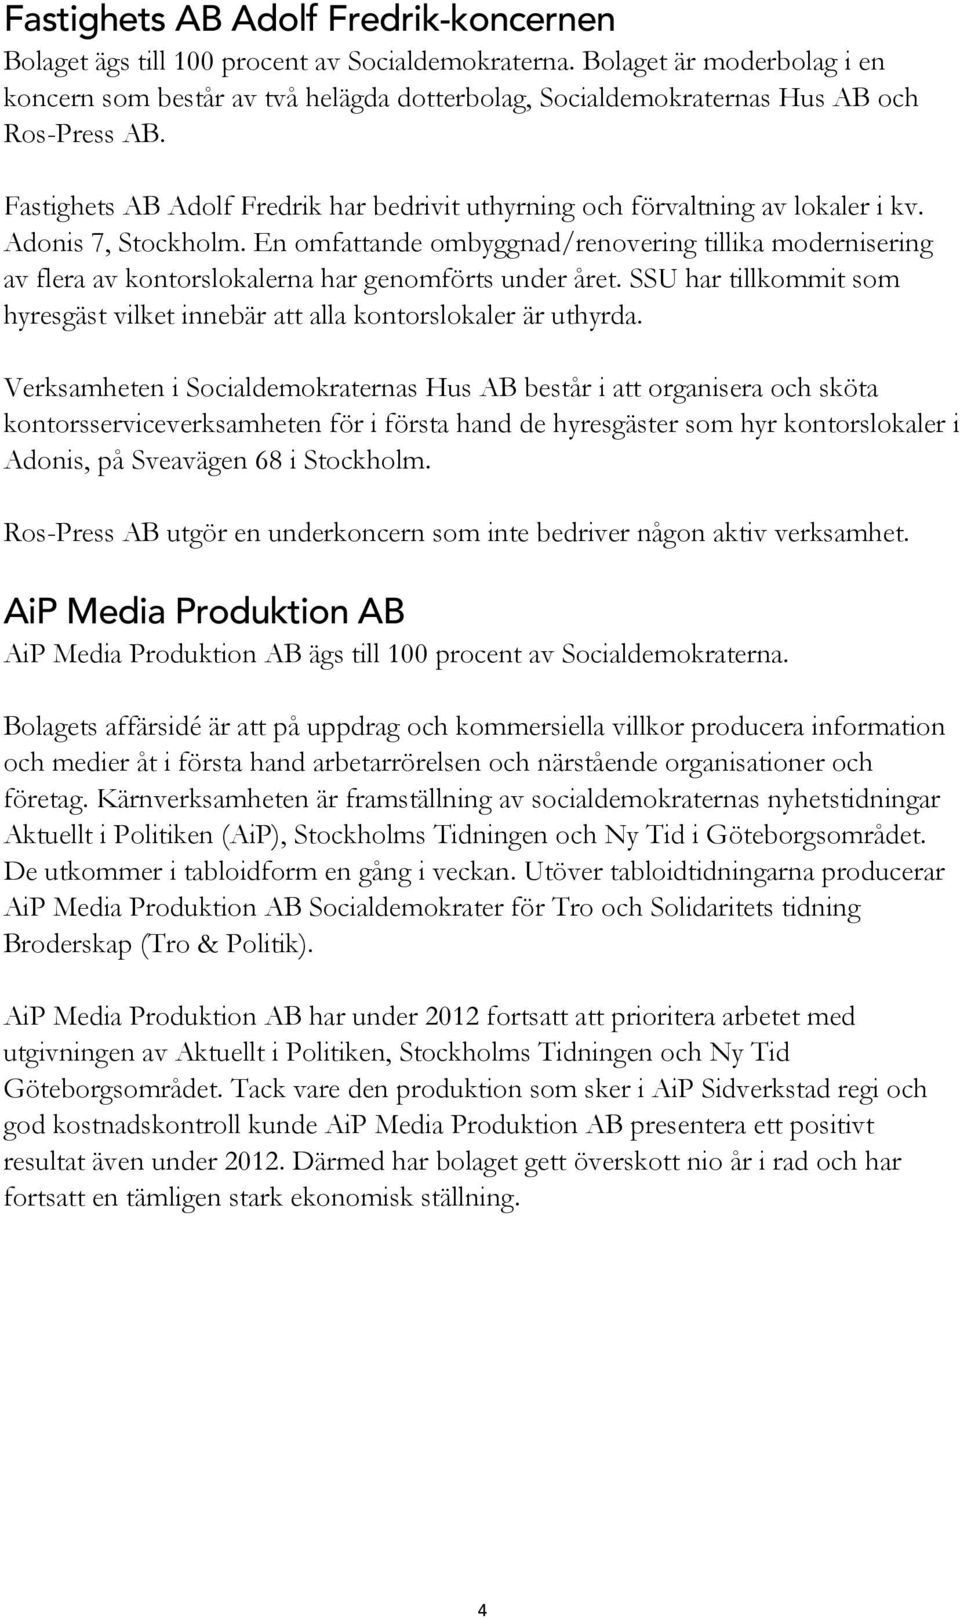 Fastighets AB Adolf Fredrik har bedrivit uthyrning och förvaltning av lokaler i kv. Adonis 7, Stockholm.